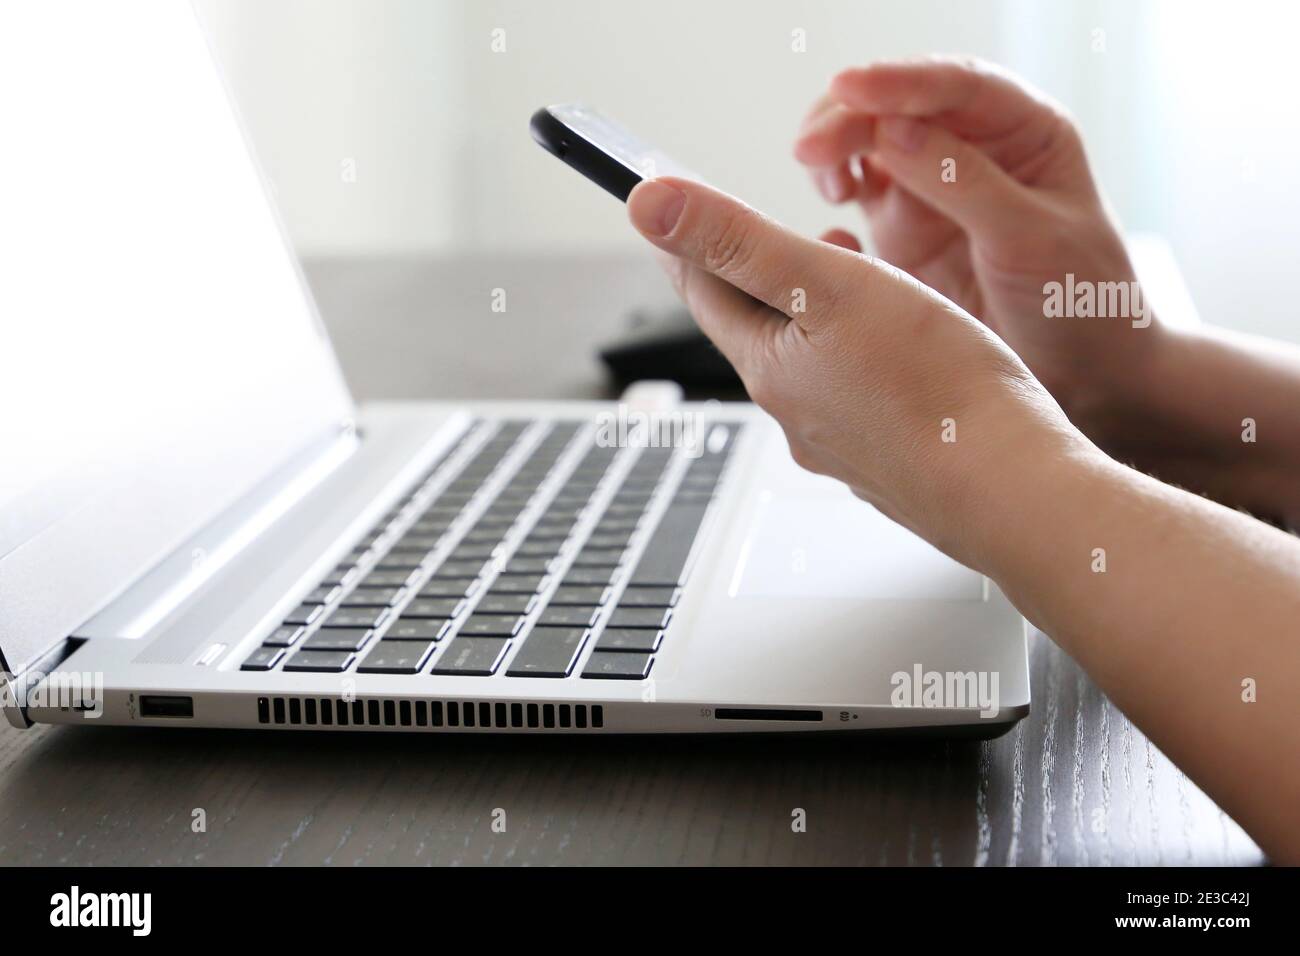 Femme utilisant un smartphone sur l'arrière-plan du clavier de l'ordinateur portable. Concept de communication en ligne, travail au bureau ou à domicile et paiement Banque D'Images